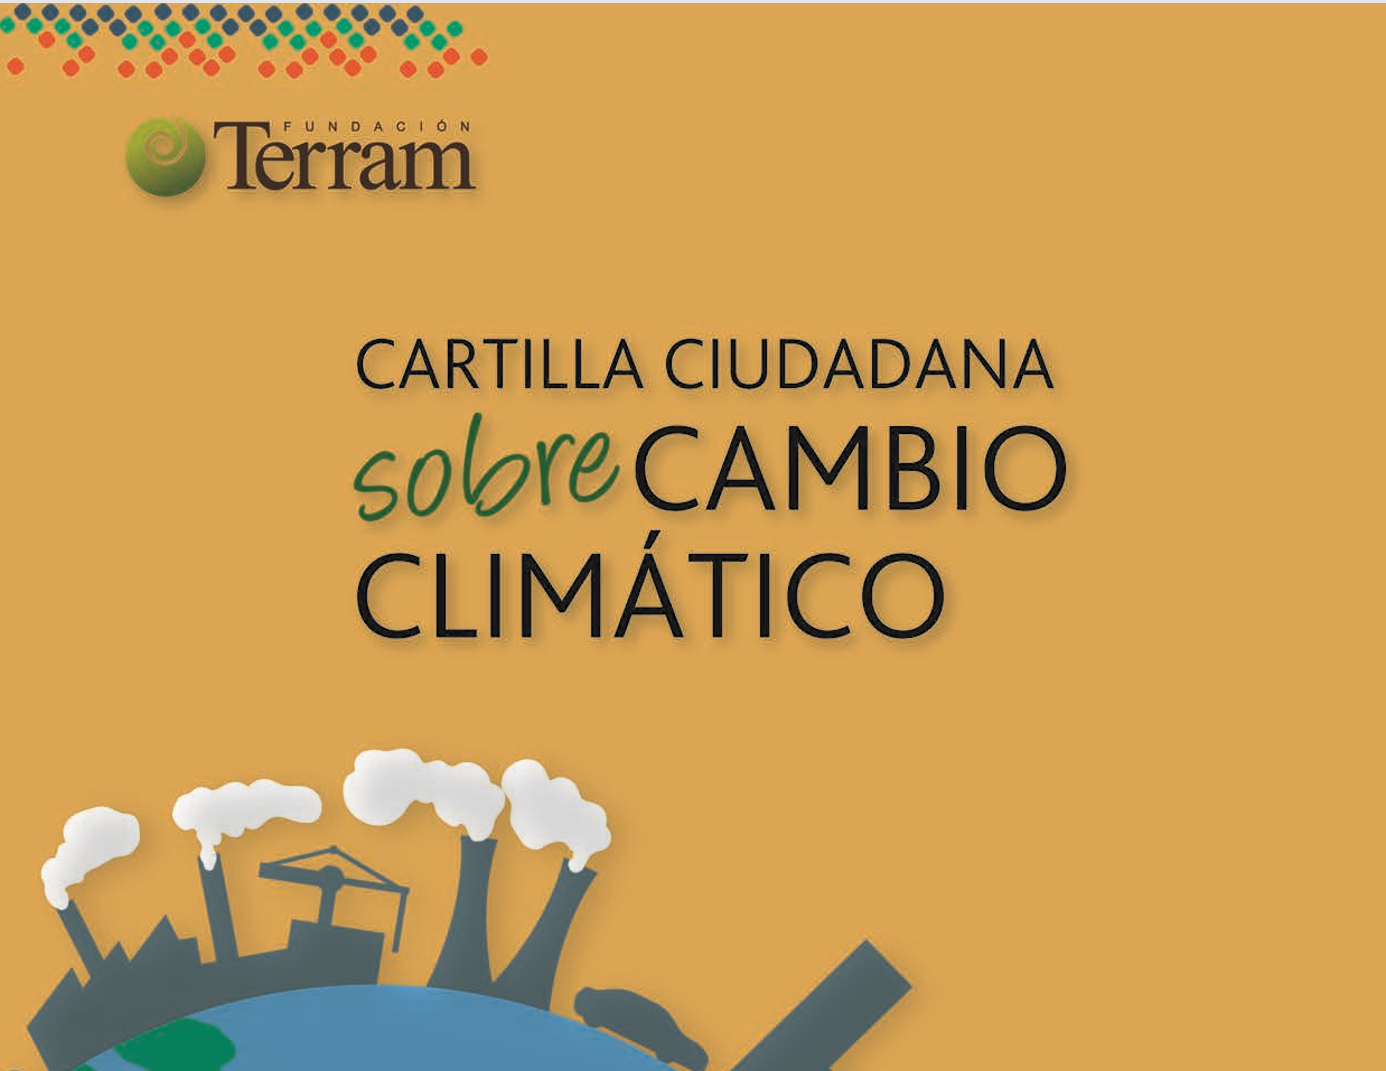 Fundación Terram publica cartilla ciudadana que advierte impactos del Cambio Climático